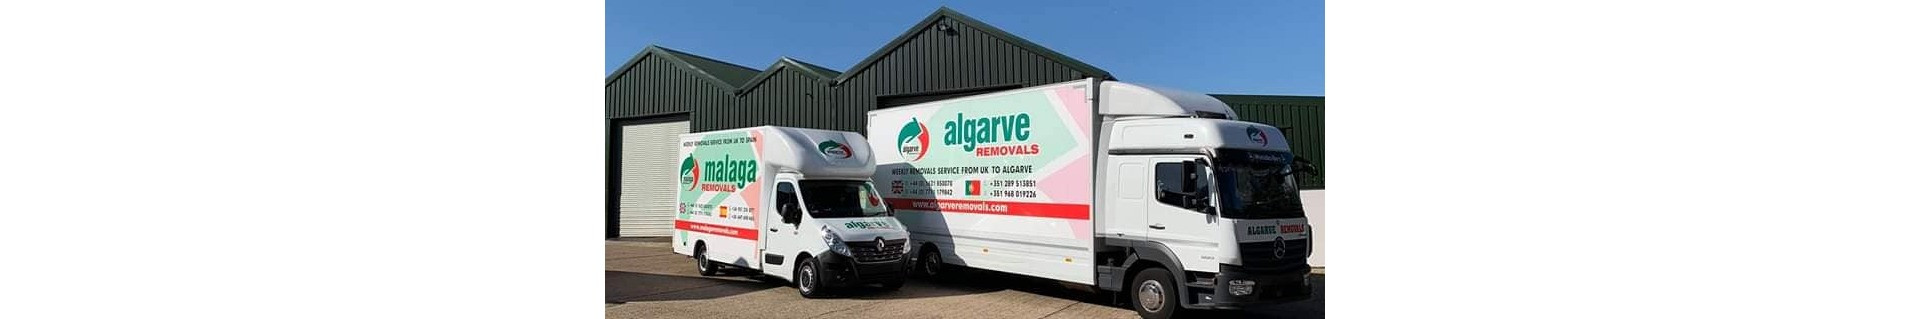 Malaga removal services